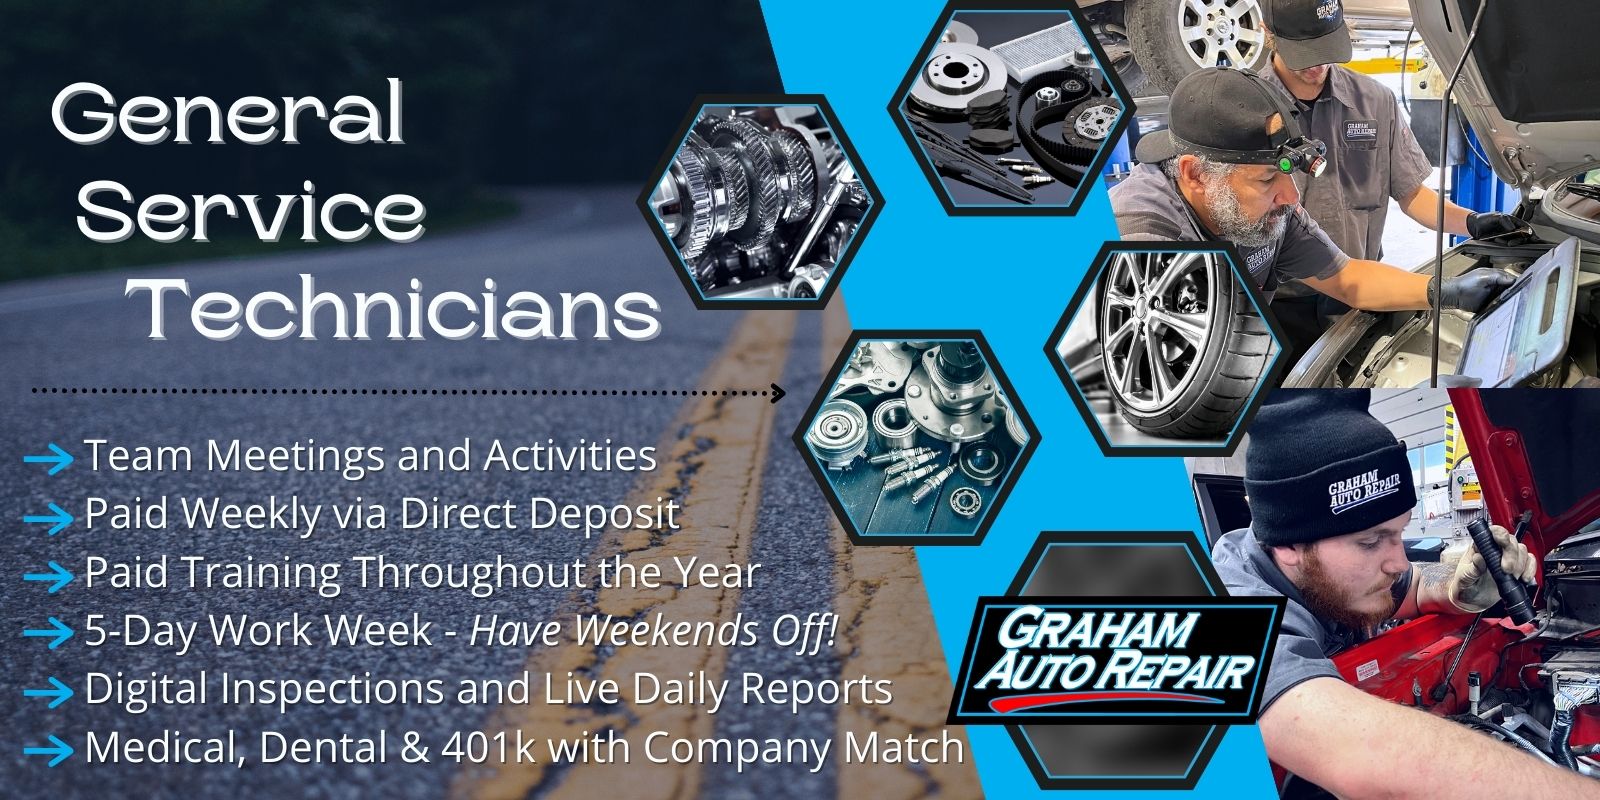 General Service Automotive Technician Job at Graham Auto Repair